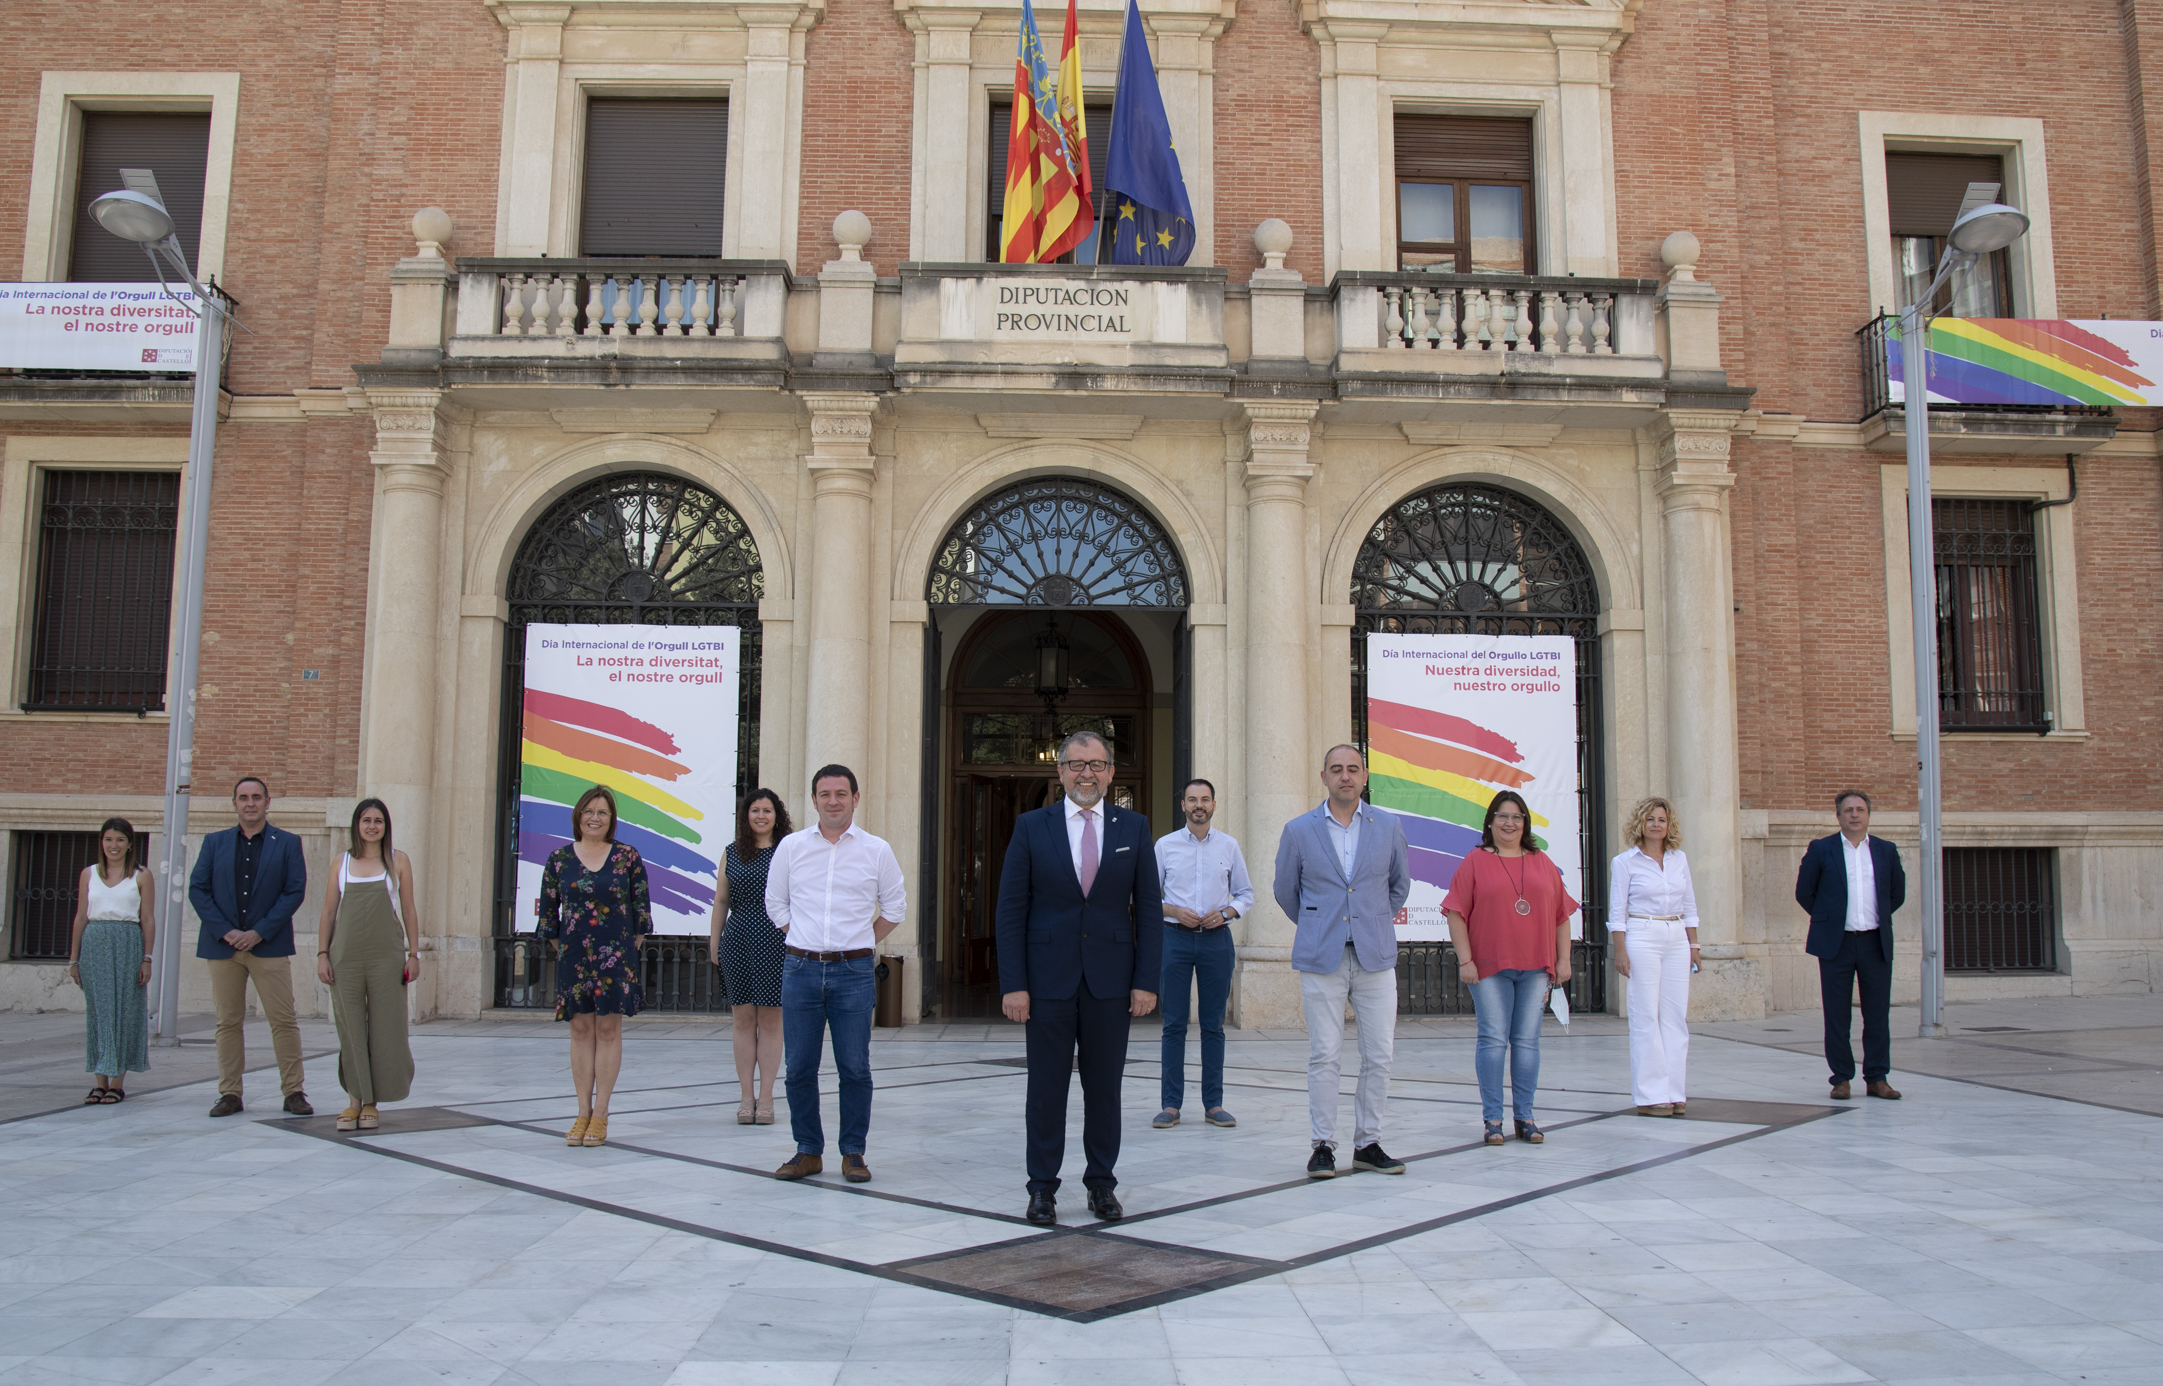 La Diputació de Castelló commemora per primera vegada de manera institucional l’Orgull LGTBI